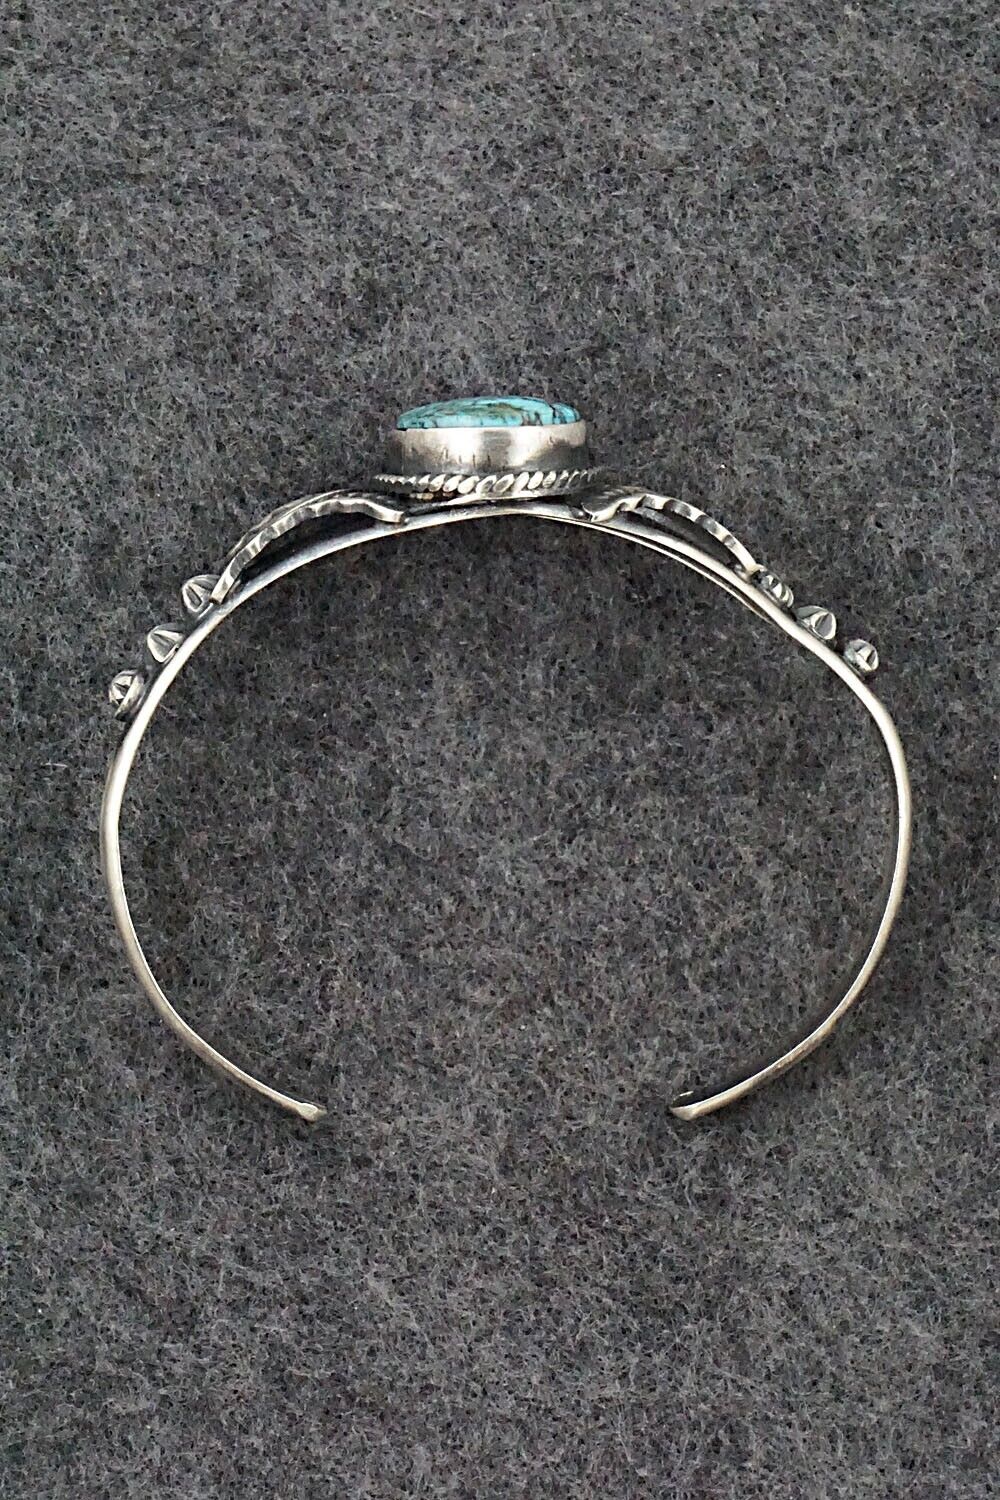 Turquoise & Sterling Silver Bracelet - Gilbert Tom